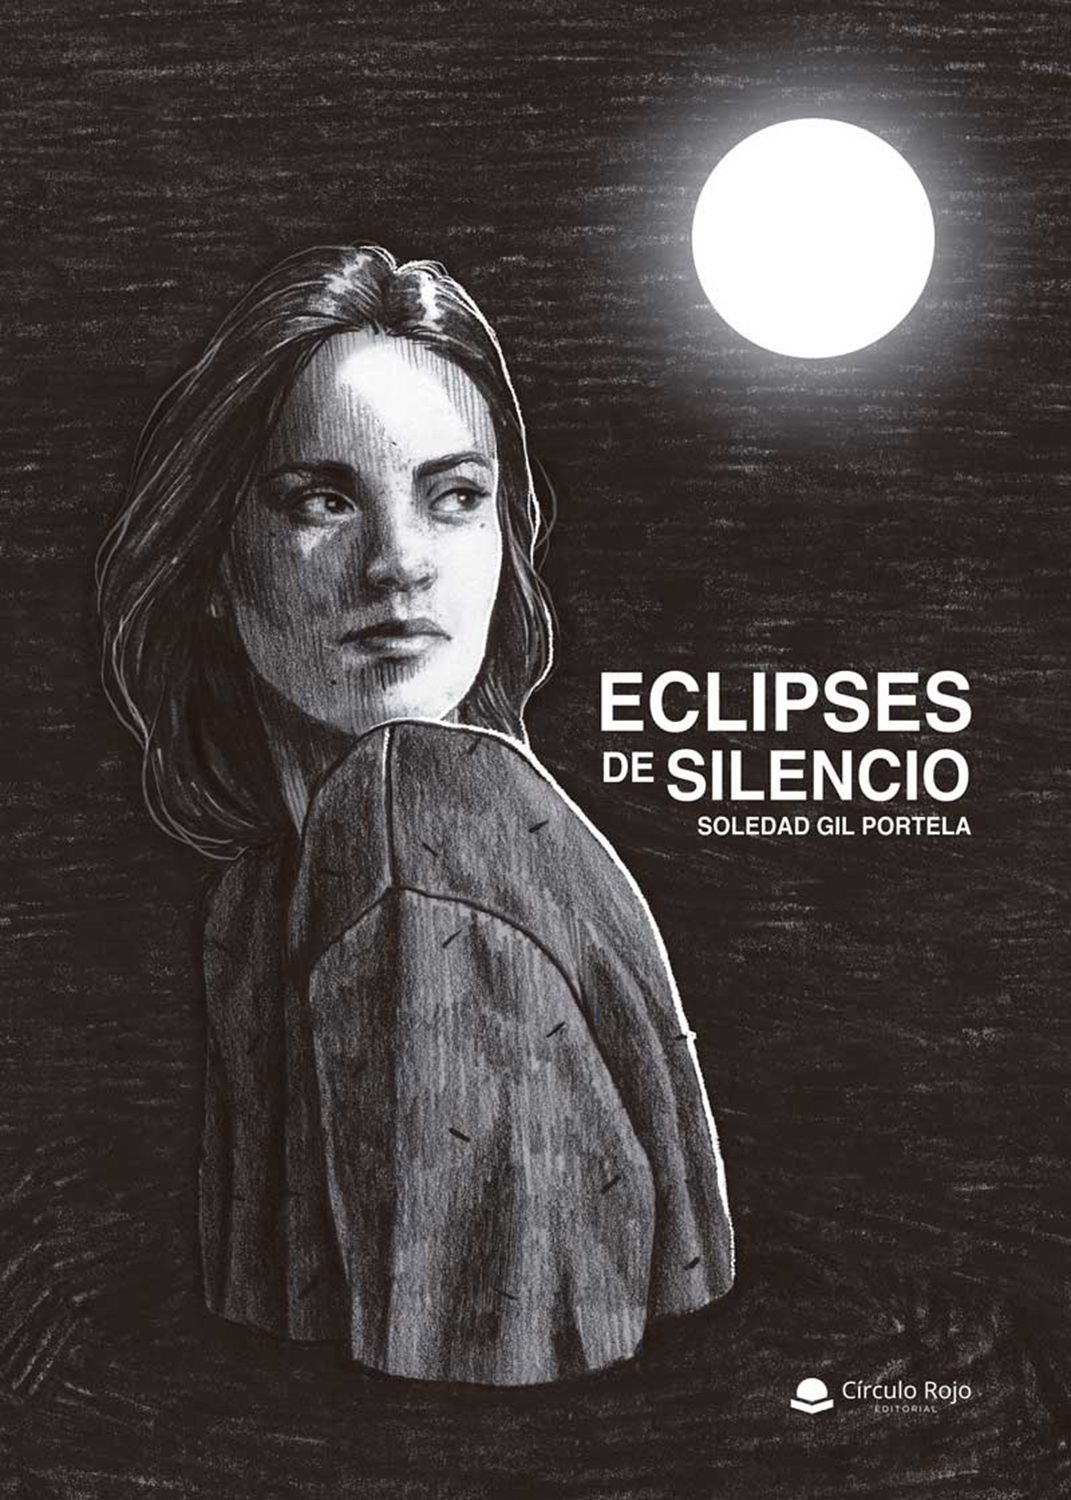 Eclipses de silencio, un poemario que liberar el alma y los sentimientos, de Soledad Gil